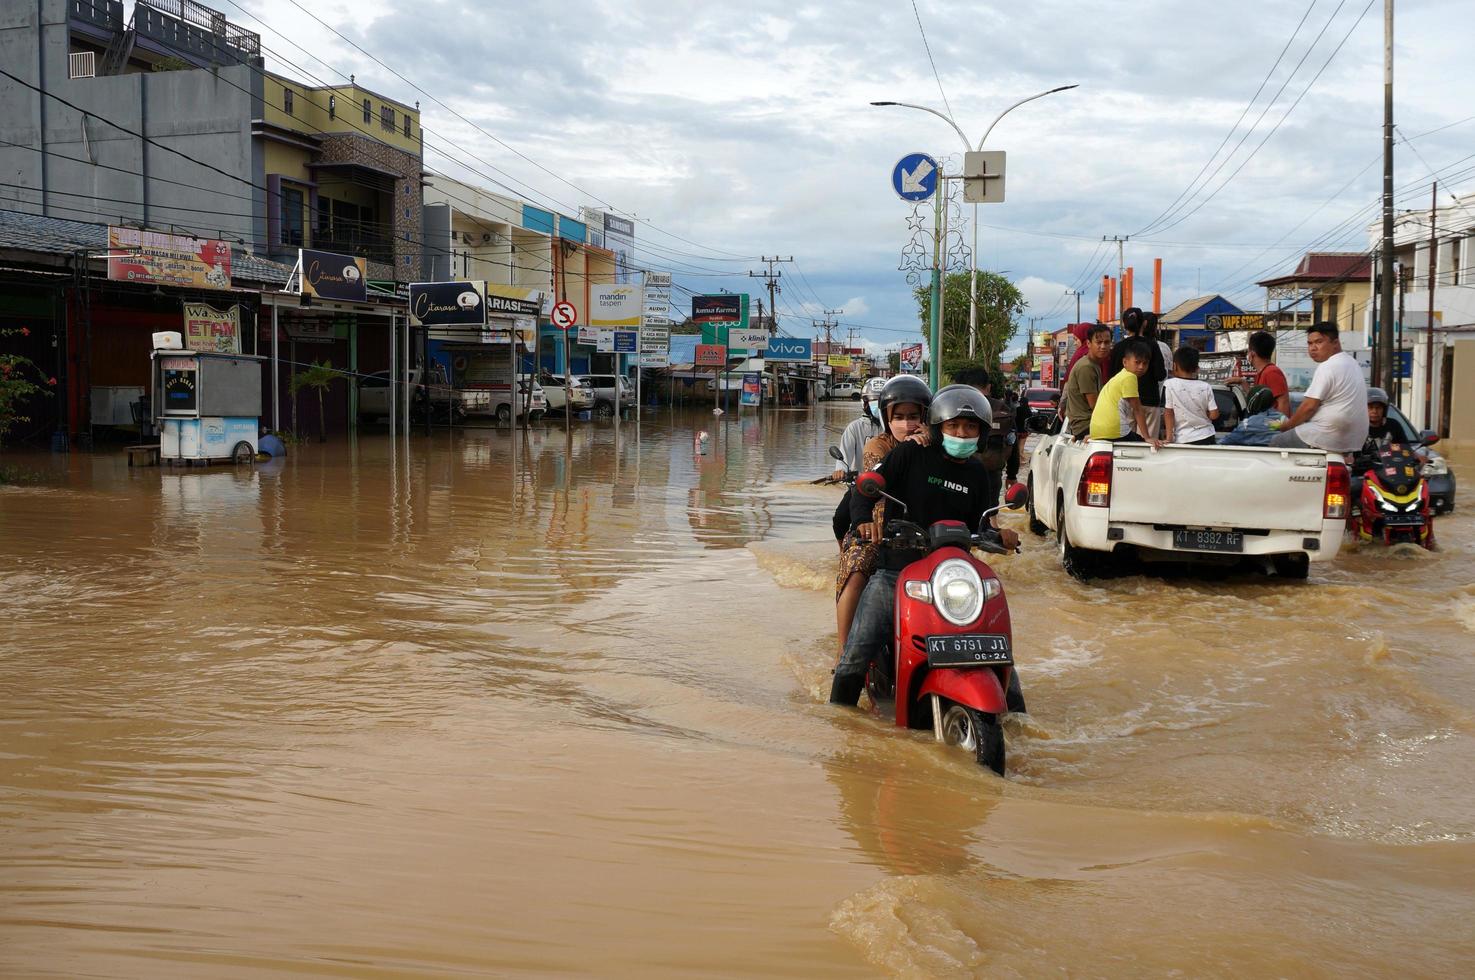 oosten- kut, oosten- kalimantaan, Indonesië, 2022 - overstromingen raken huizen en snelwegen omdat hoog regenval en hoog tij van zee water. plaats Bij sangatta, oosten- kut, Indonesië. foto